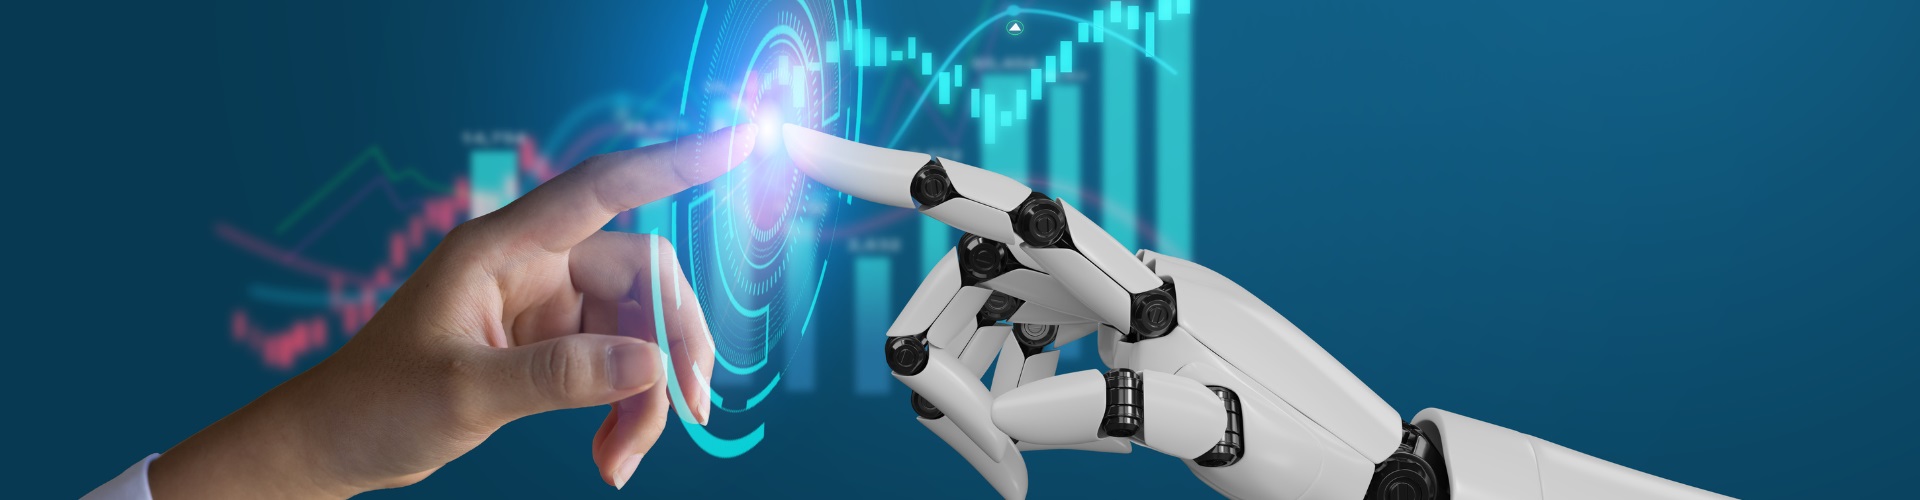 Podcast: The Business of AI & Robotics